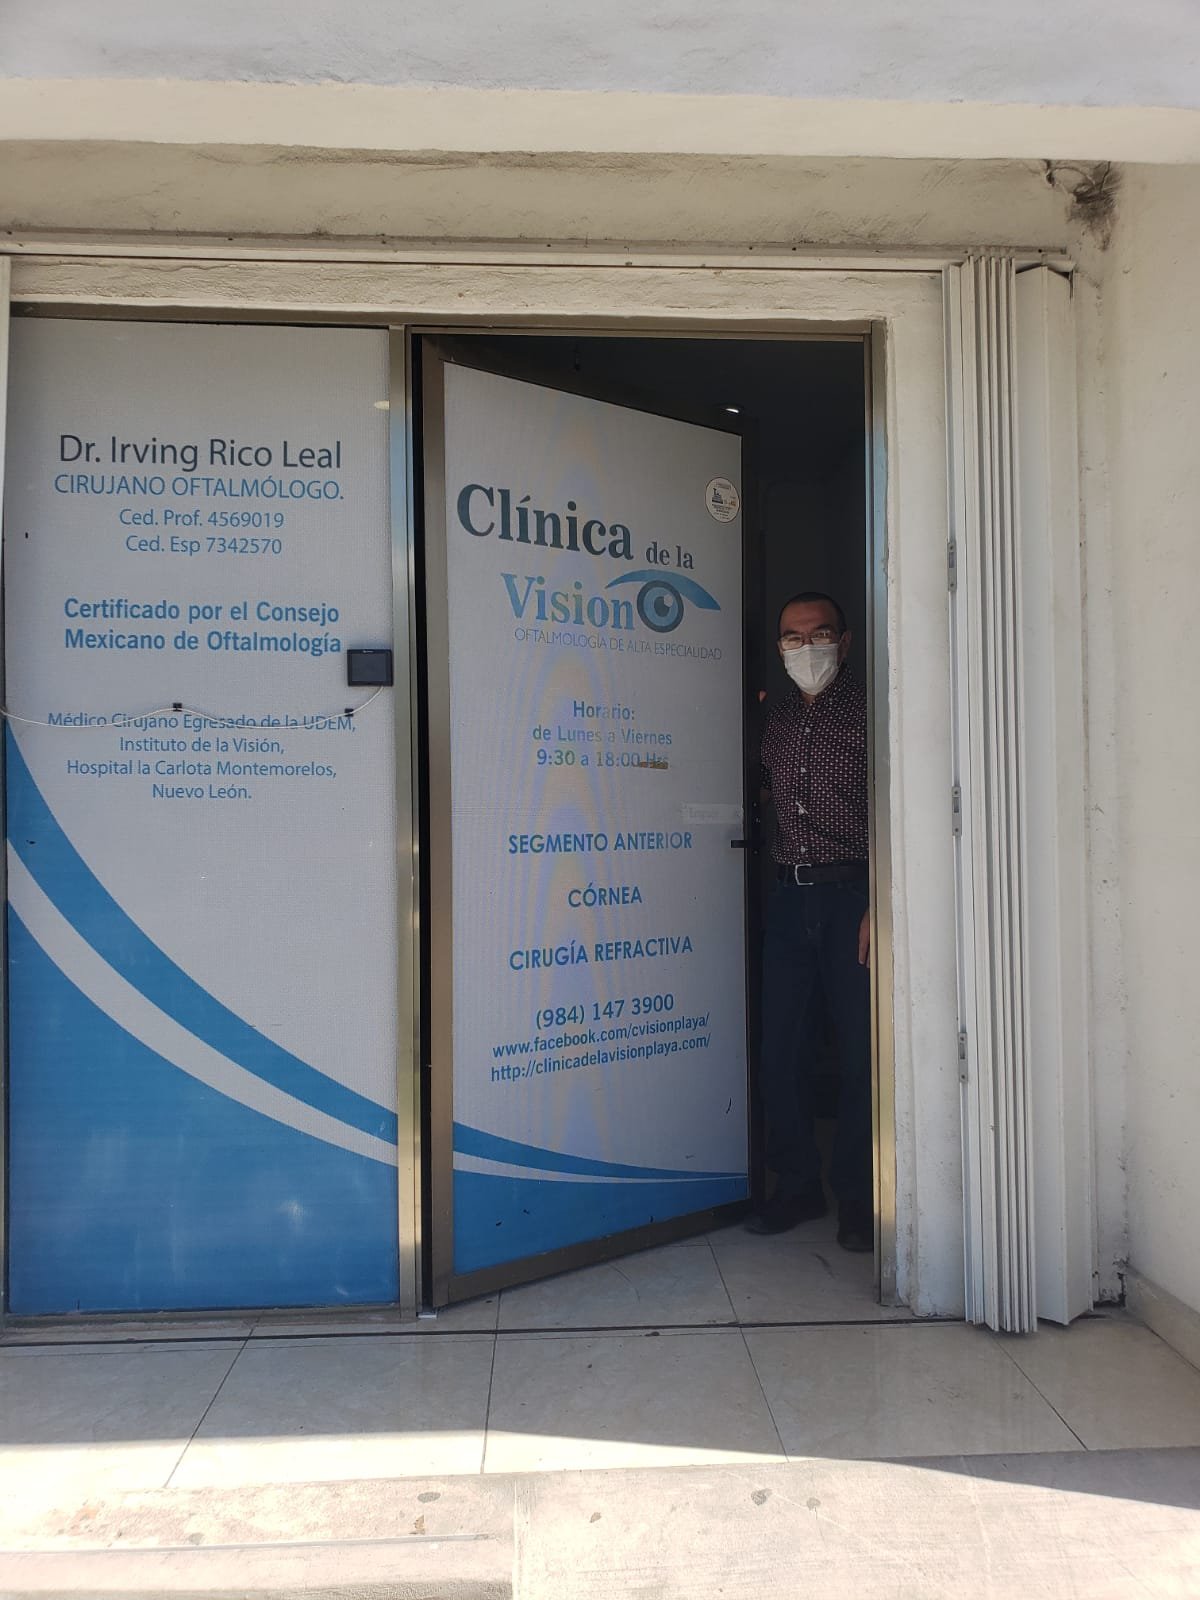 Clinica de Vision in Playa del Carmen